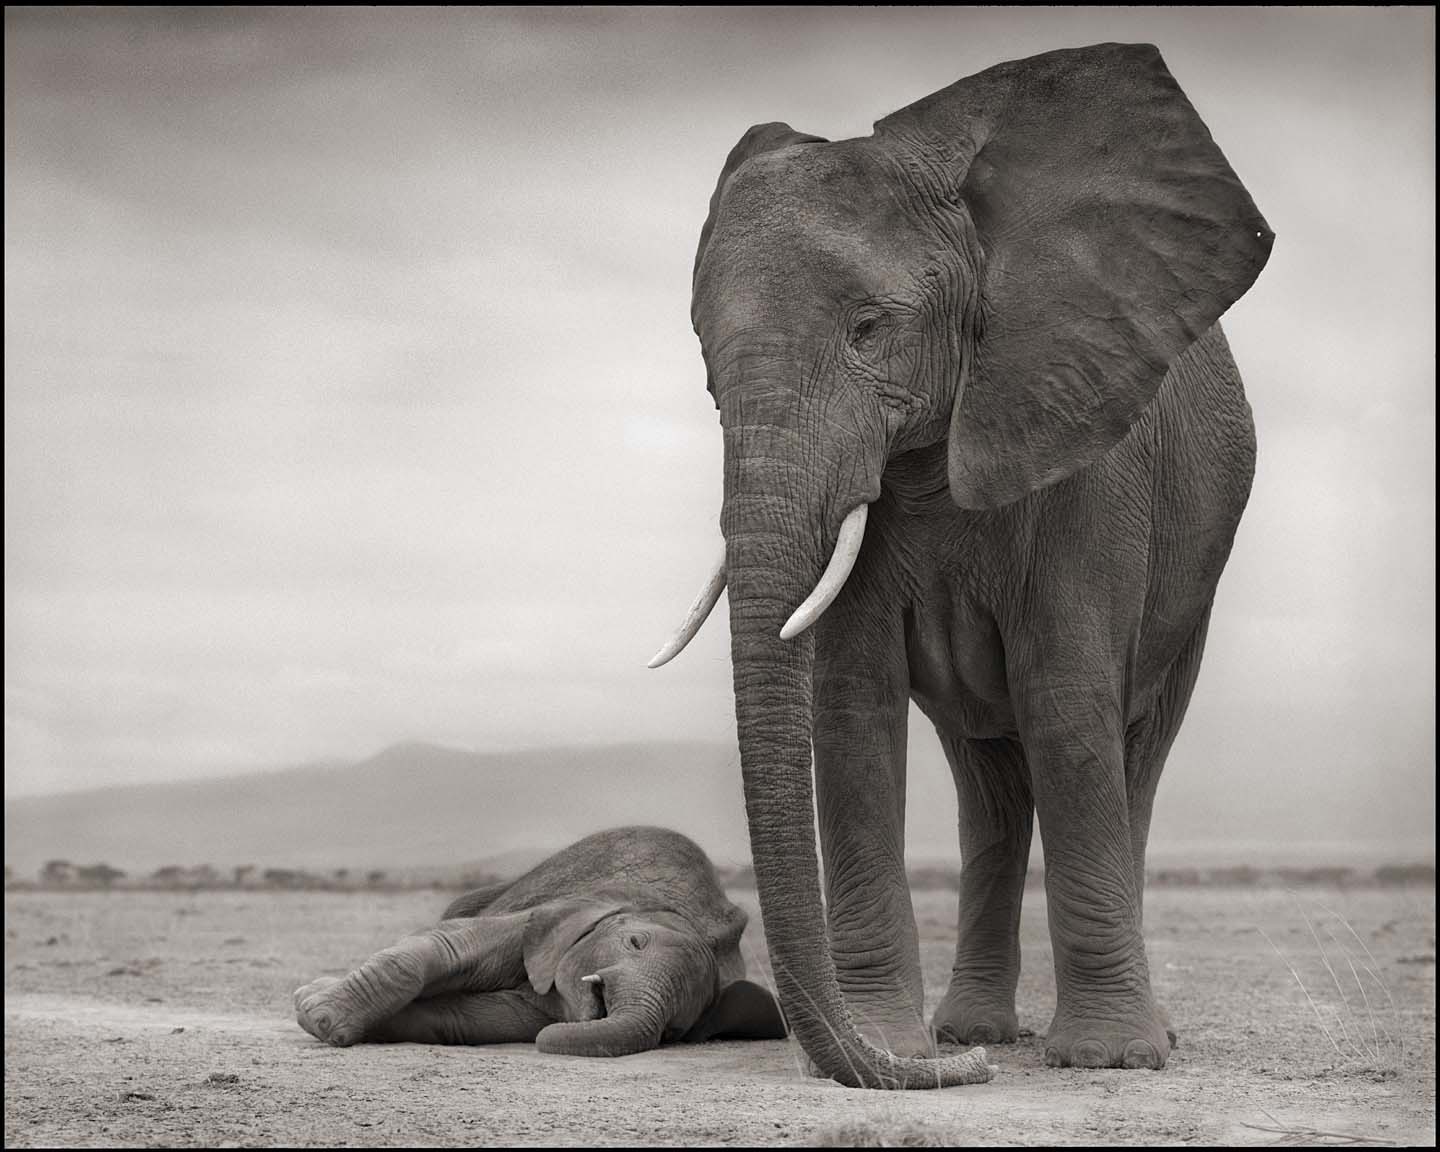 Elephant with Sleeping Baby